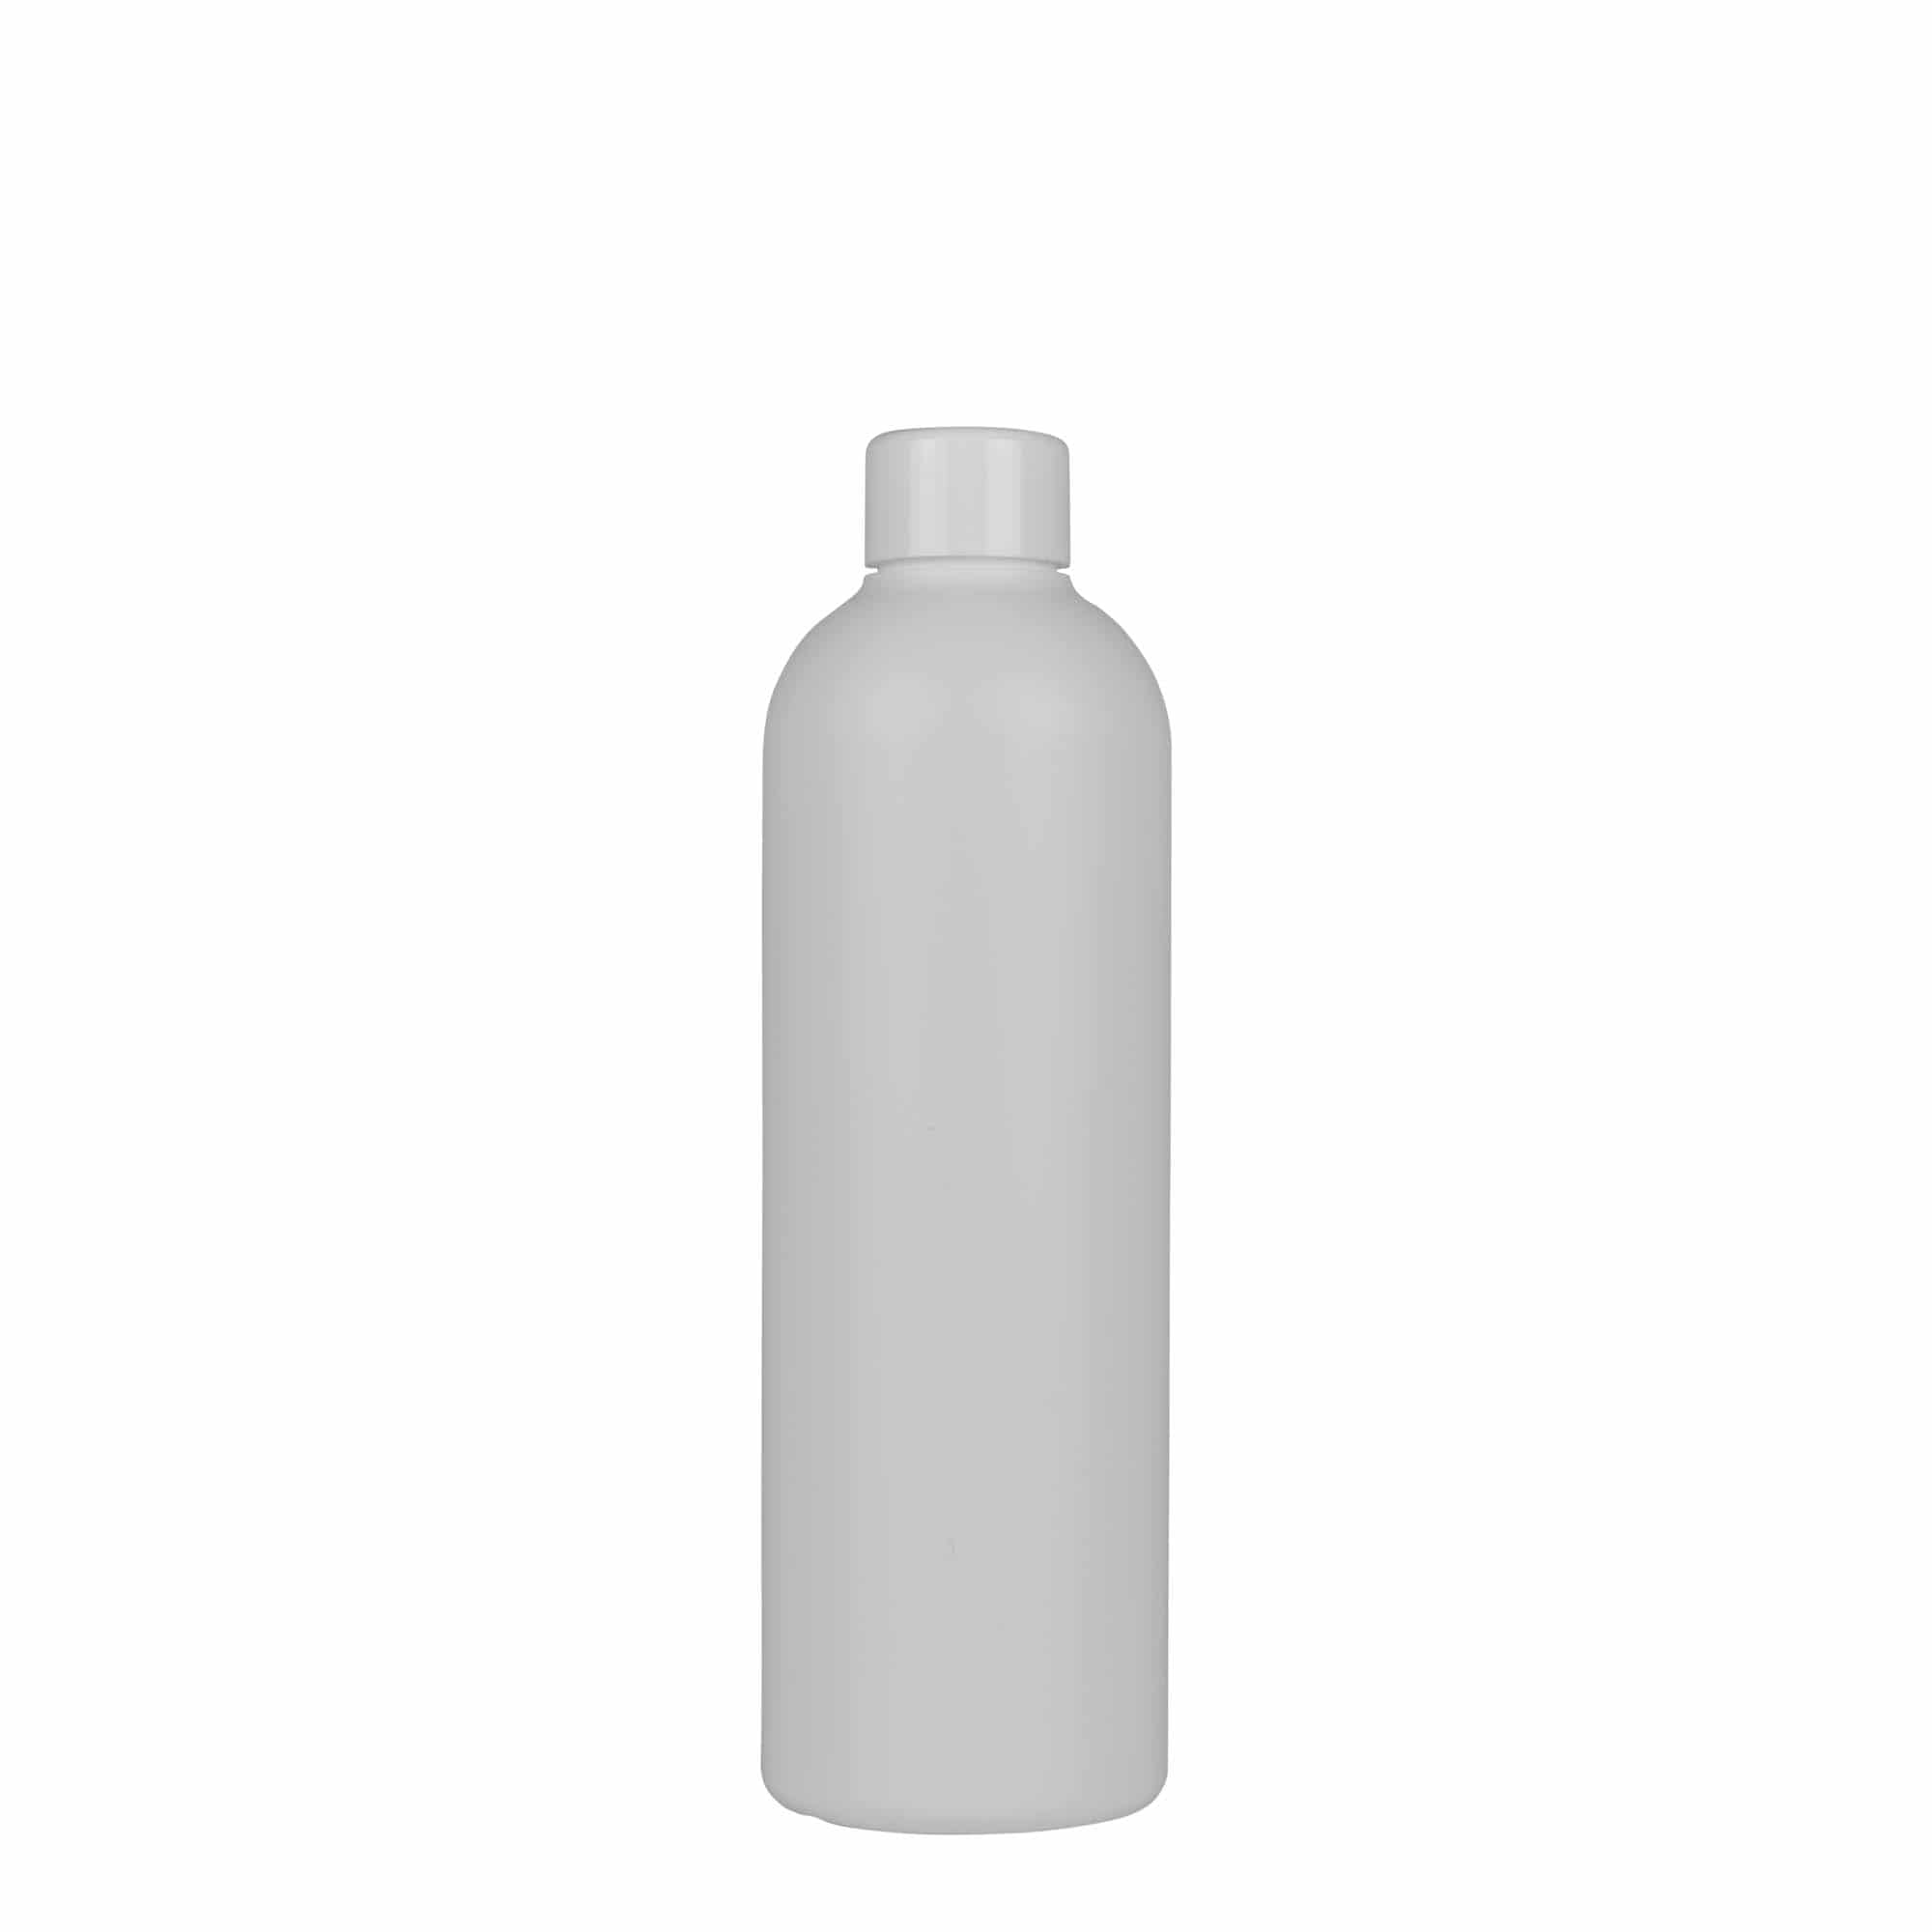 300 ml plastic bottle 'Tuffy', HDPE, white, closure: GPI 24/410